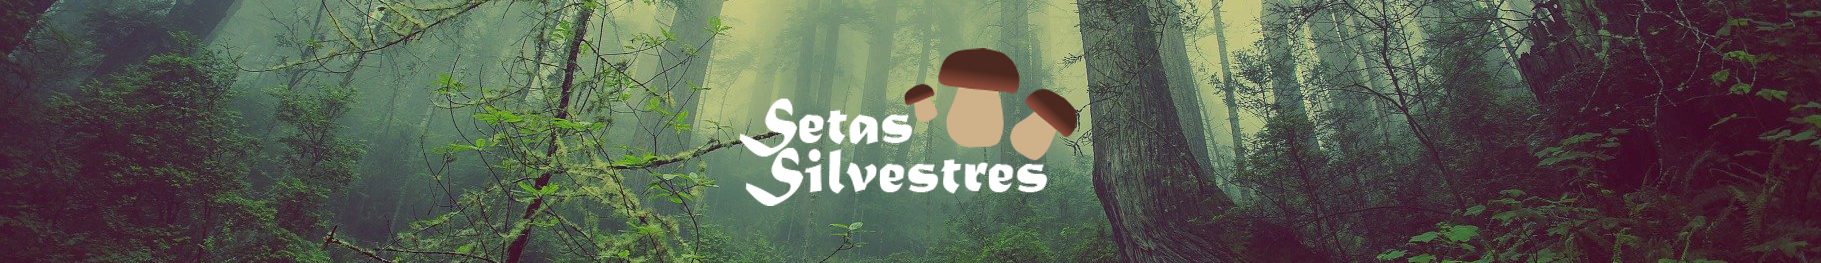 Setas Silvestres